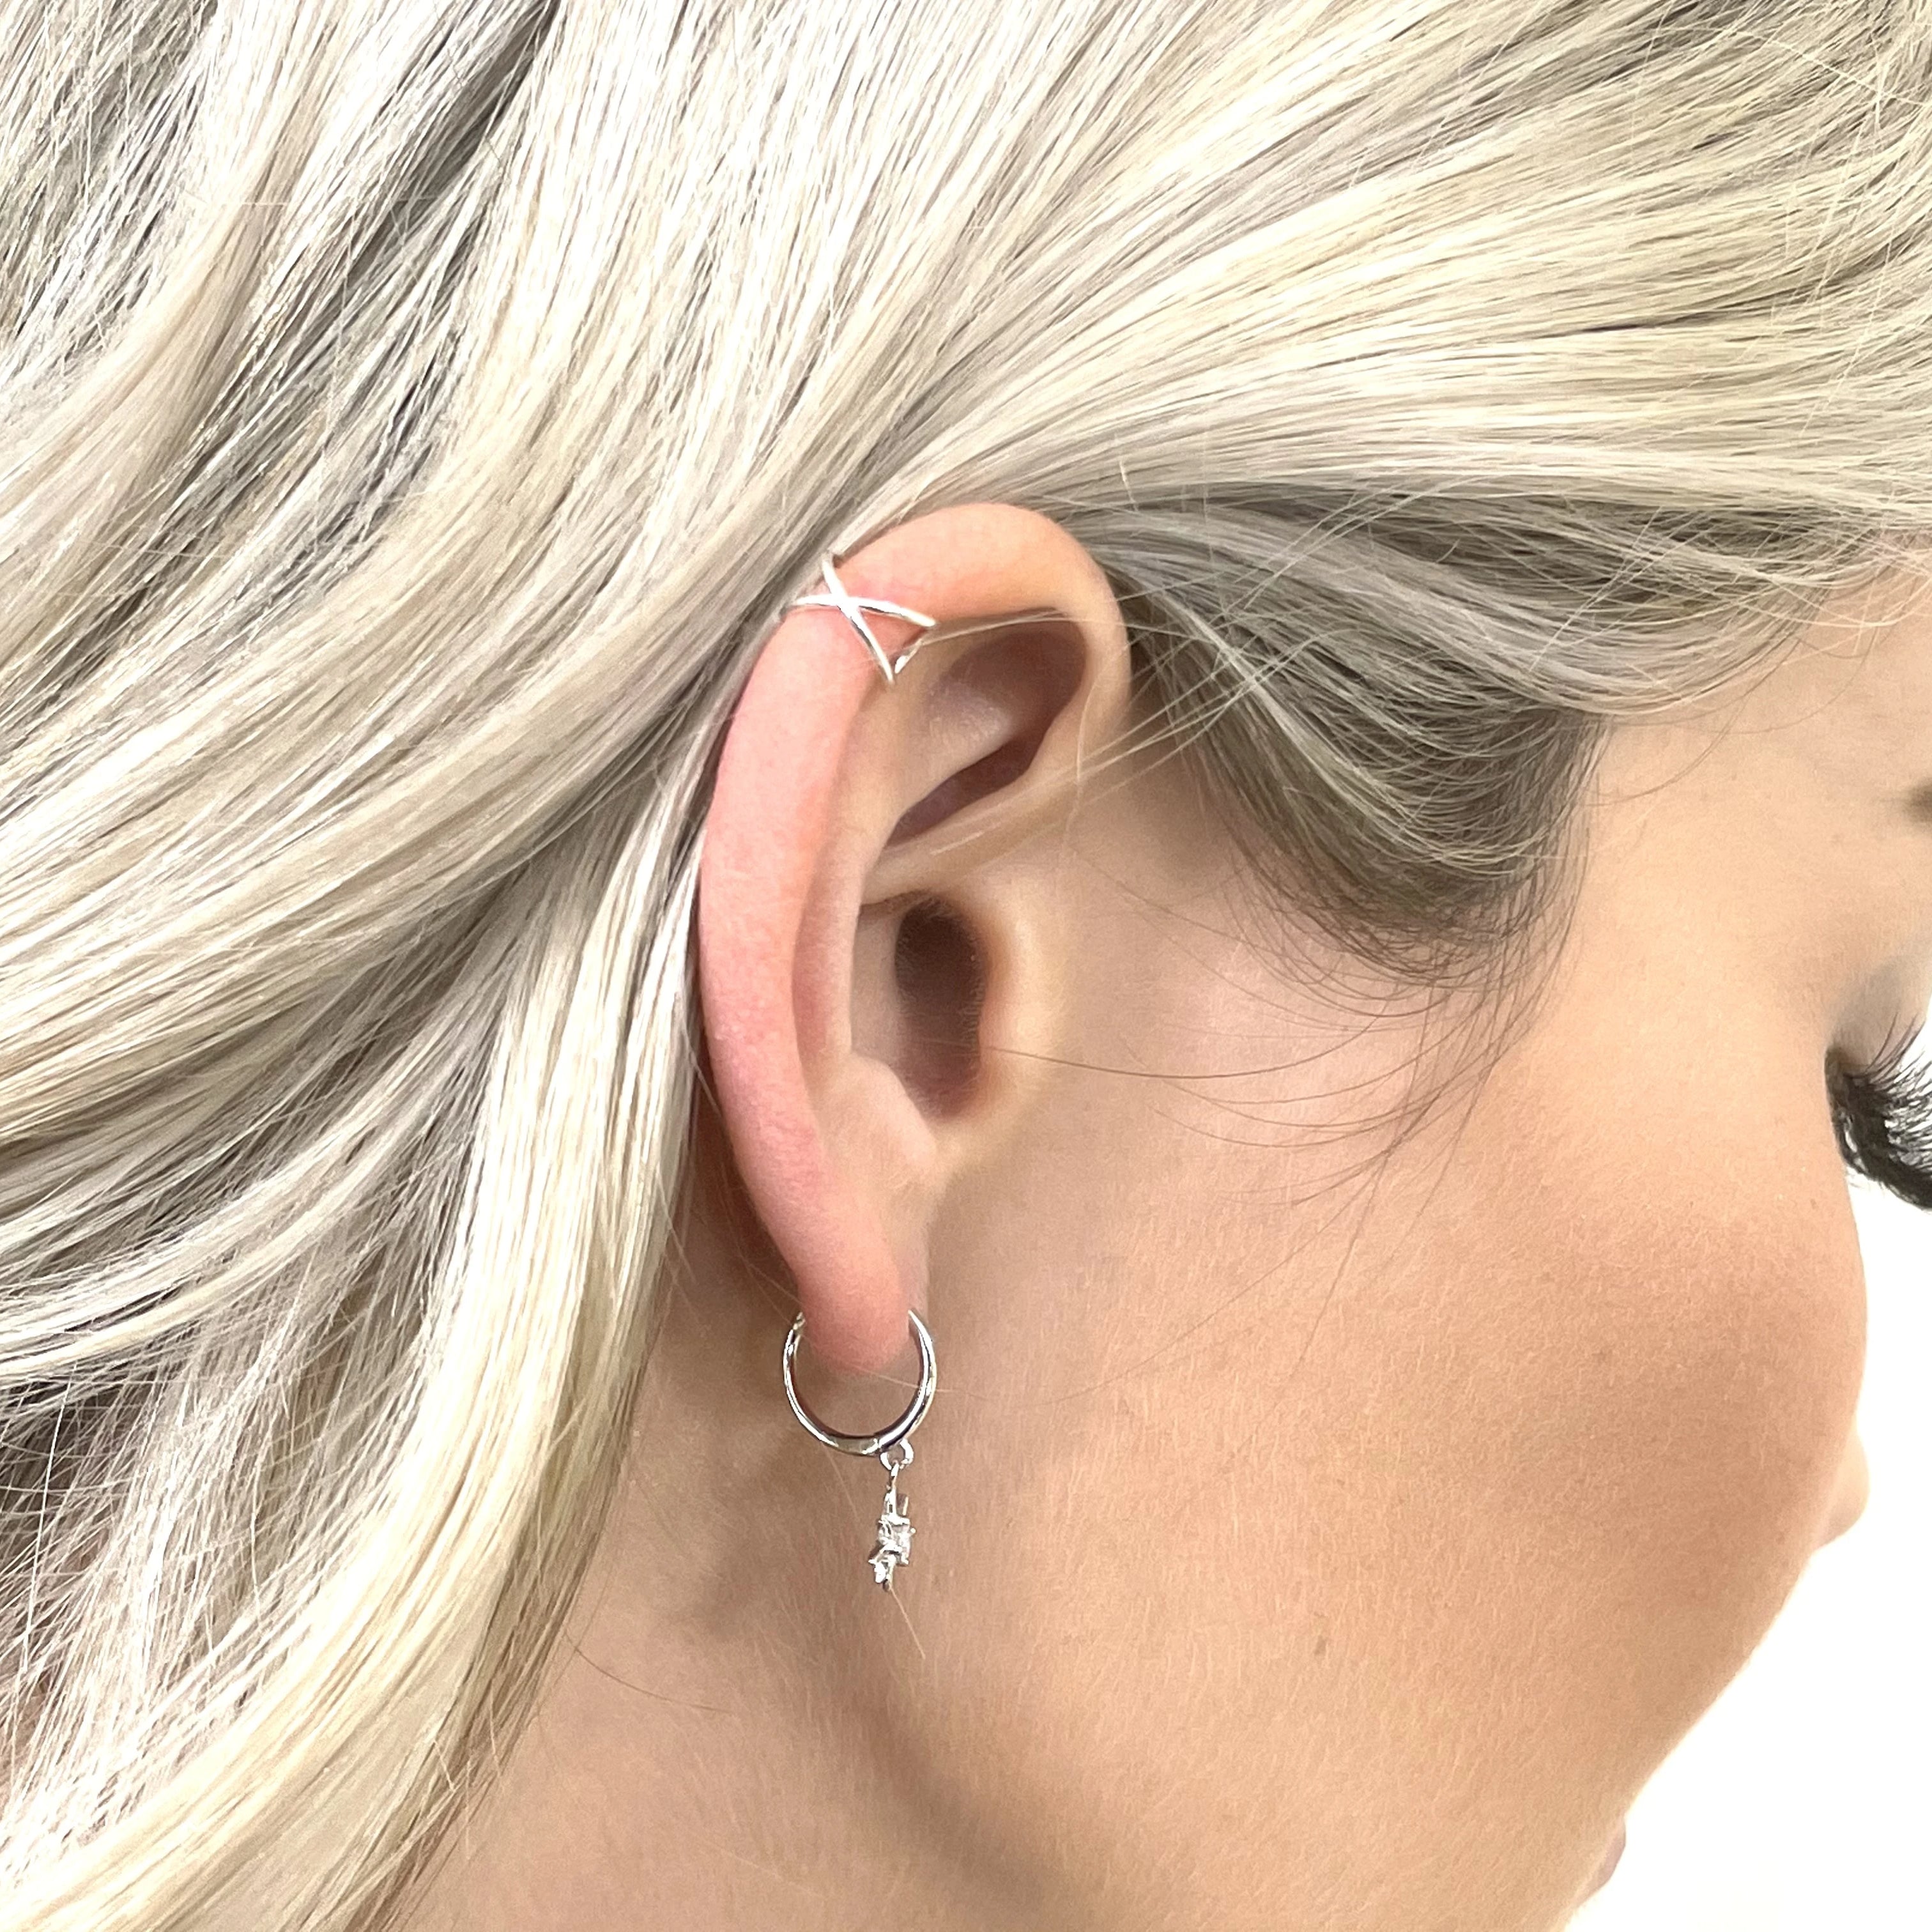 Dainty Silver Stud Earrings and Ear Cuff